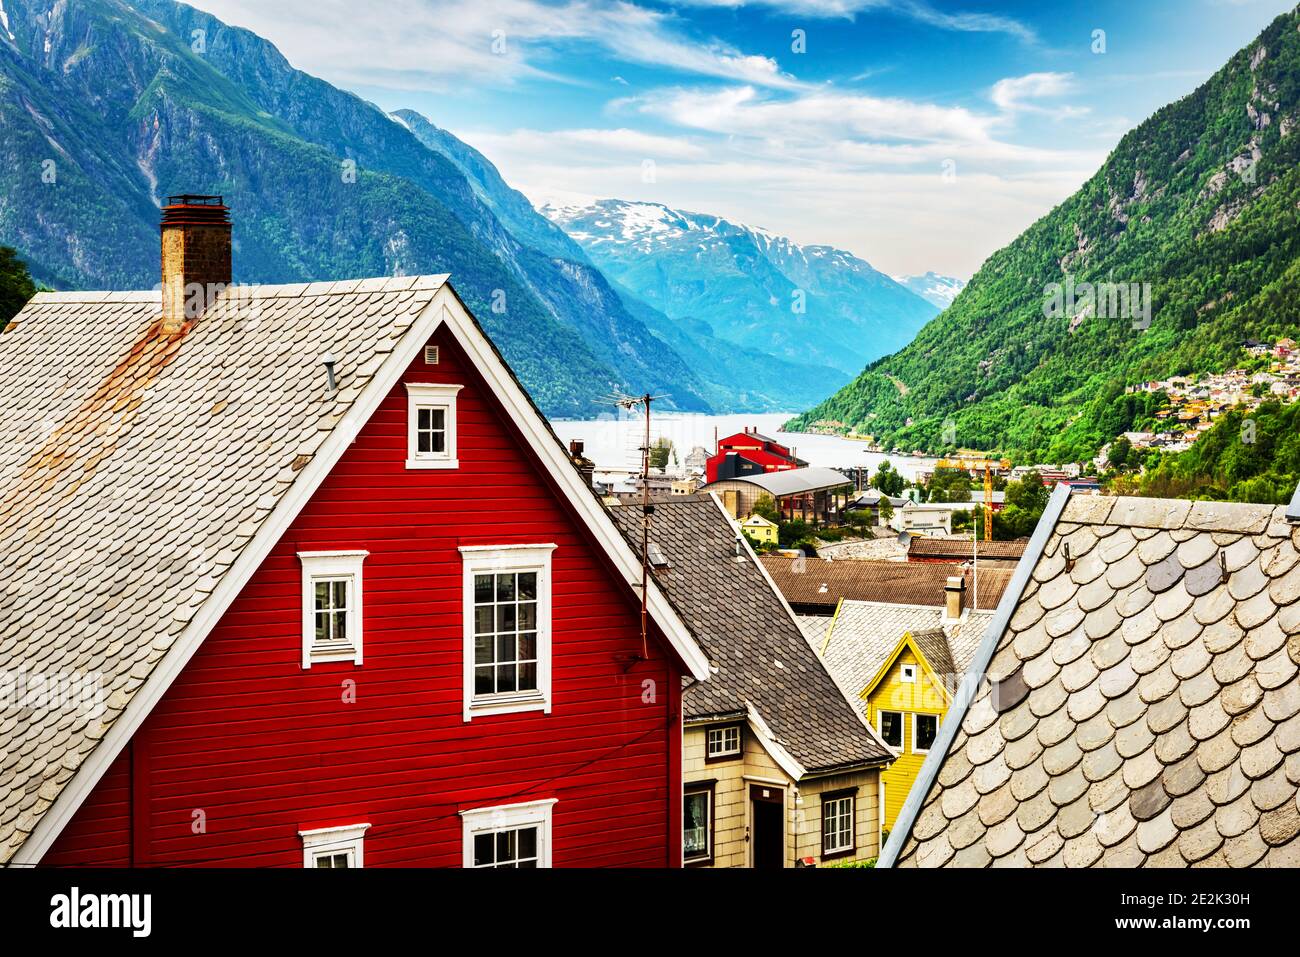 Maisons norvégiennes typiques près du fjord et des montagnes enneigées. Norvège, Europe. Photographie de paysage Banque D'Images